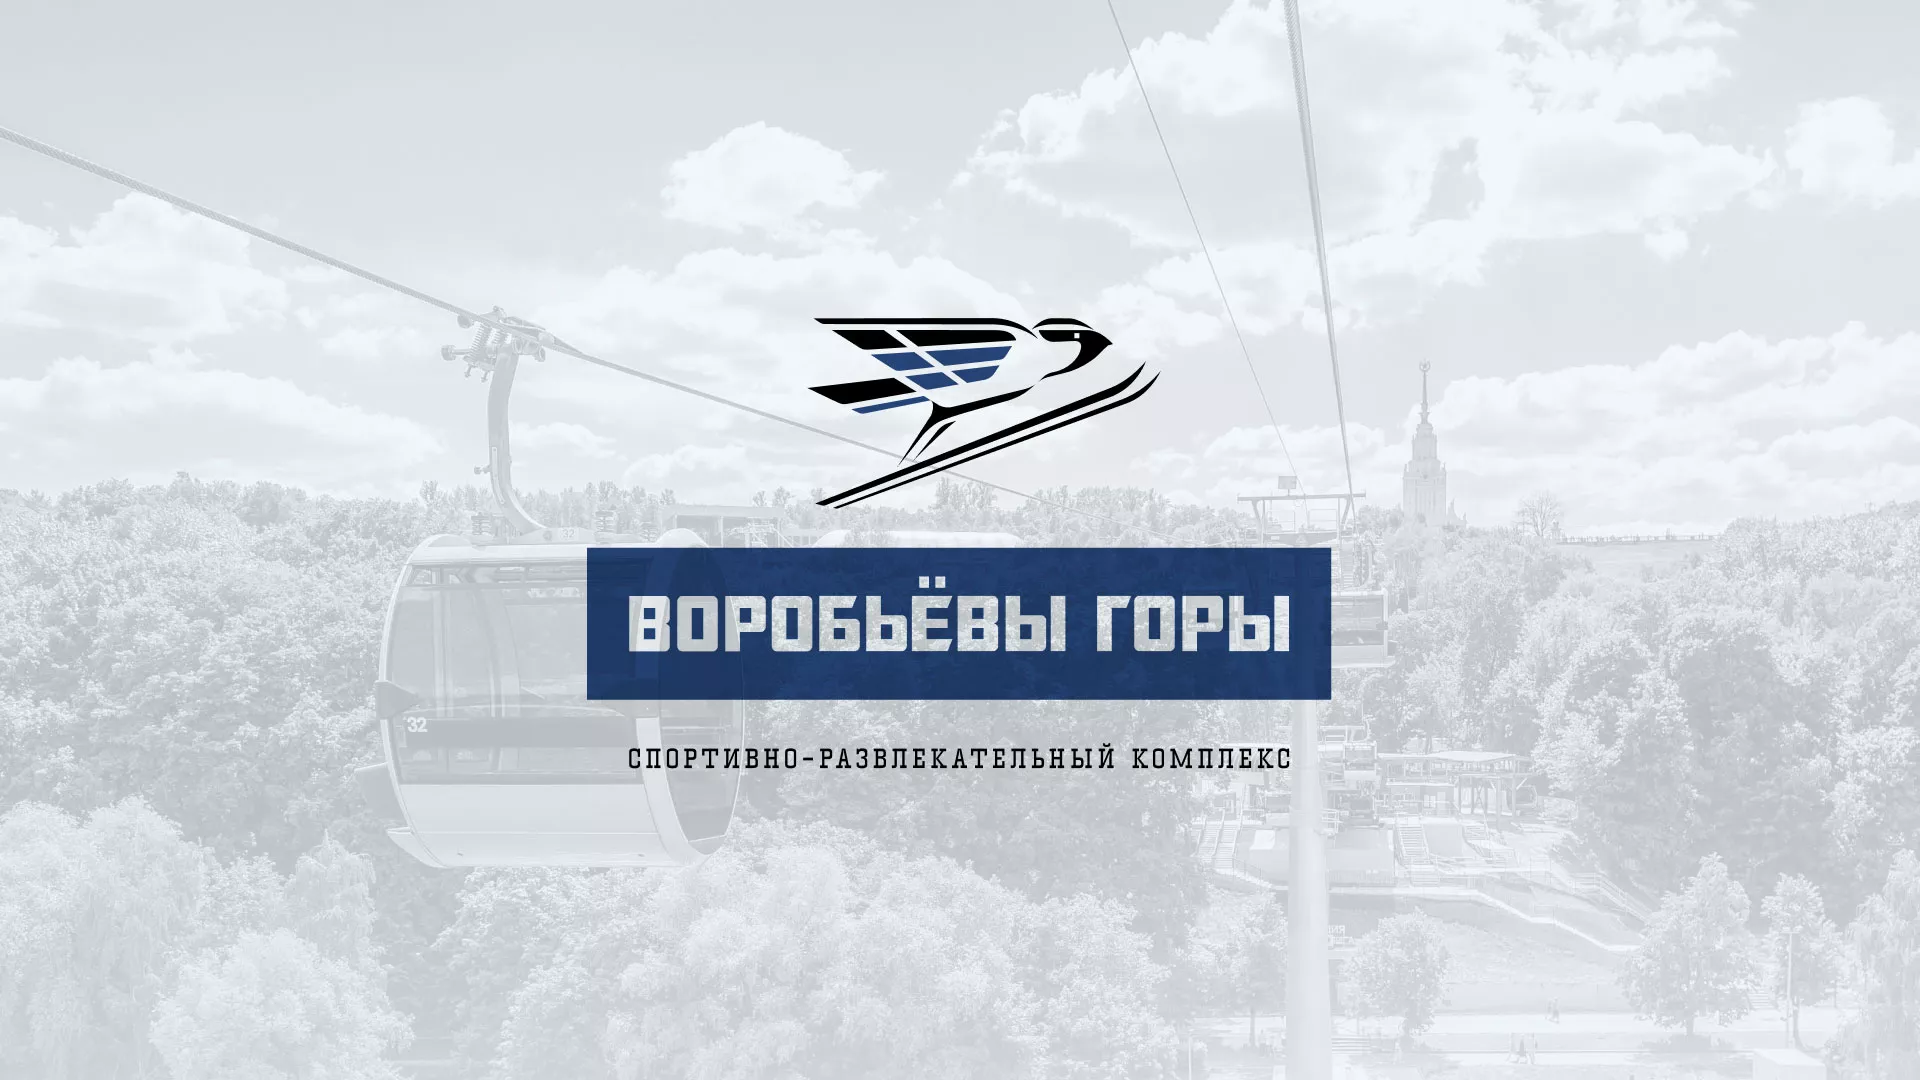 Разработка сайта в Красноярске для спортивно-развлекательного комплекса «Воробьёвы горы»